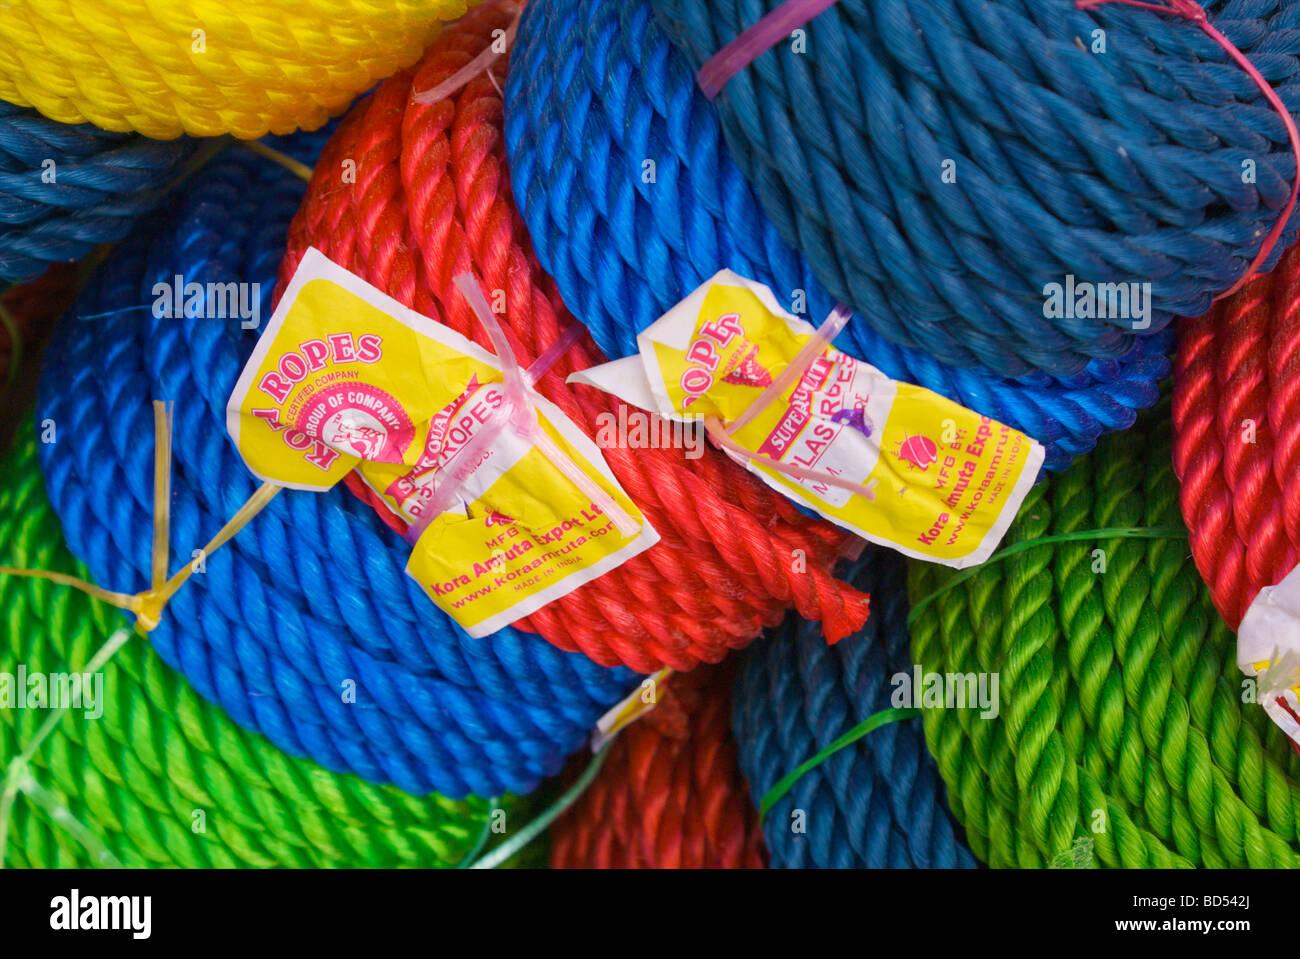 Corde colorate in un negozio in Deira, Dubai, Emirati arabi uniti (EAU) Foto Stock